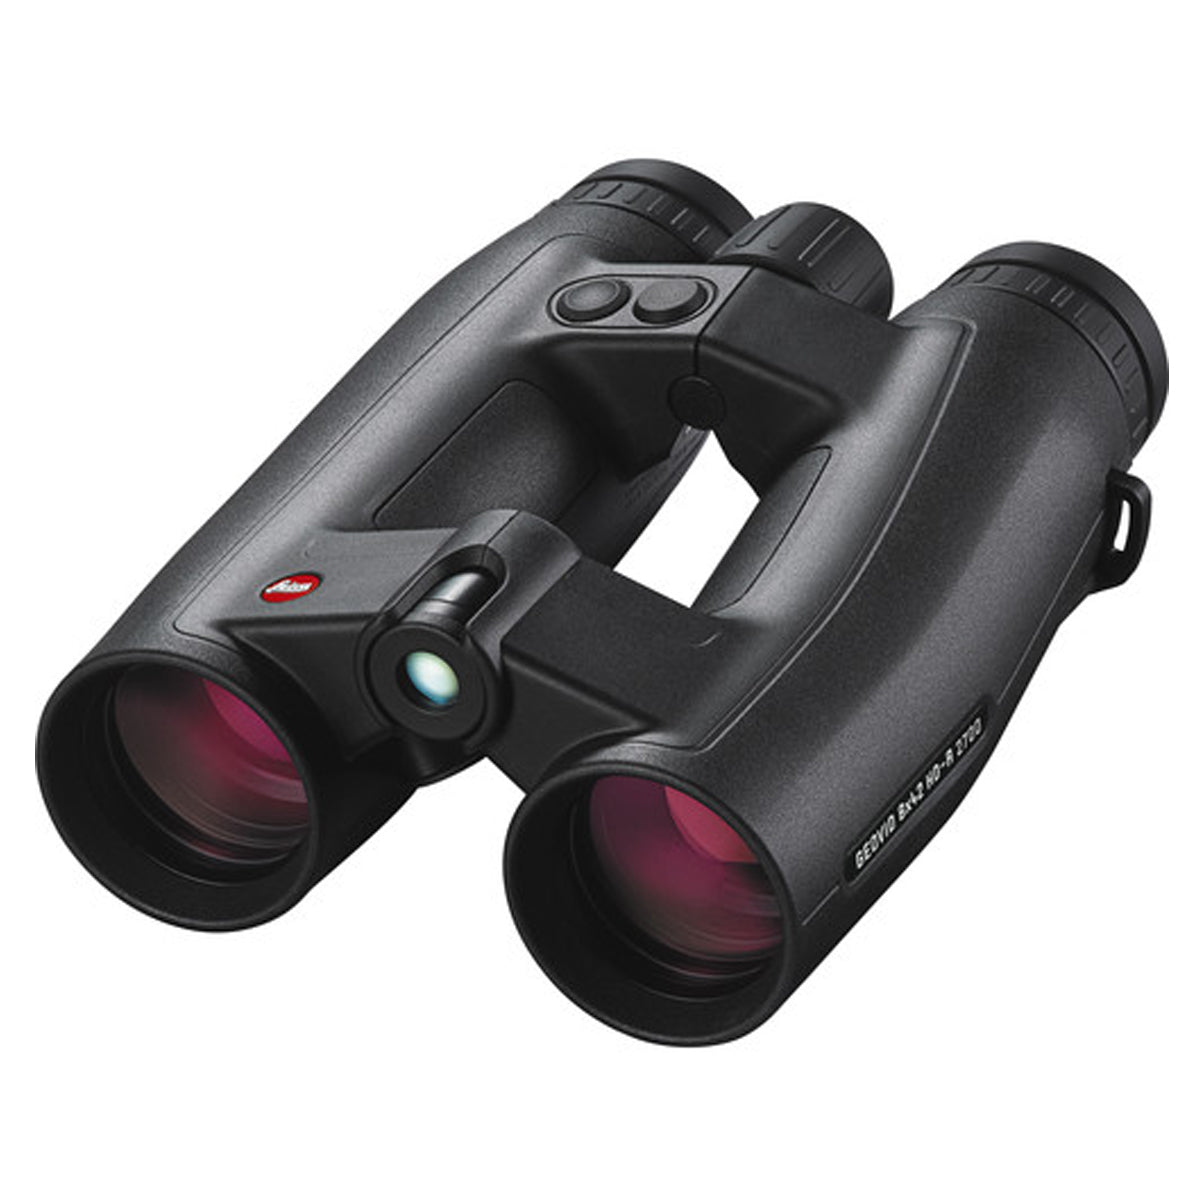 Leica Geovid 8x42 HD-R 2700 Rangefinder Binocular by Leica | Optics - goHUNT Shop